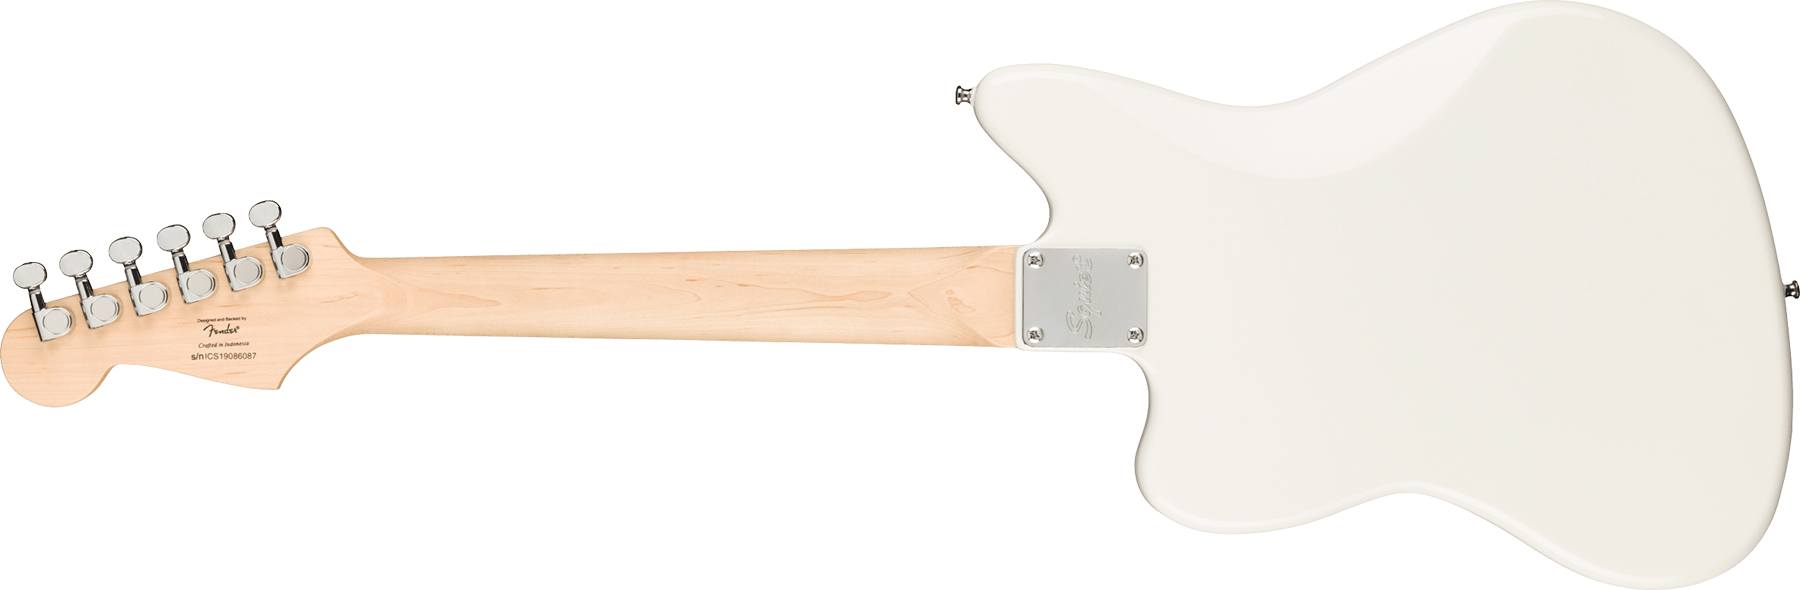 Squier Mini Jazzmaster Bullet Hh Ht Mn - Olympic White - Elektrische gitaar voor kinderen - Variation 1